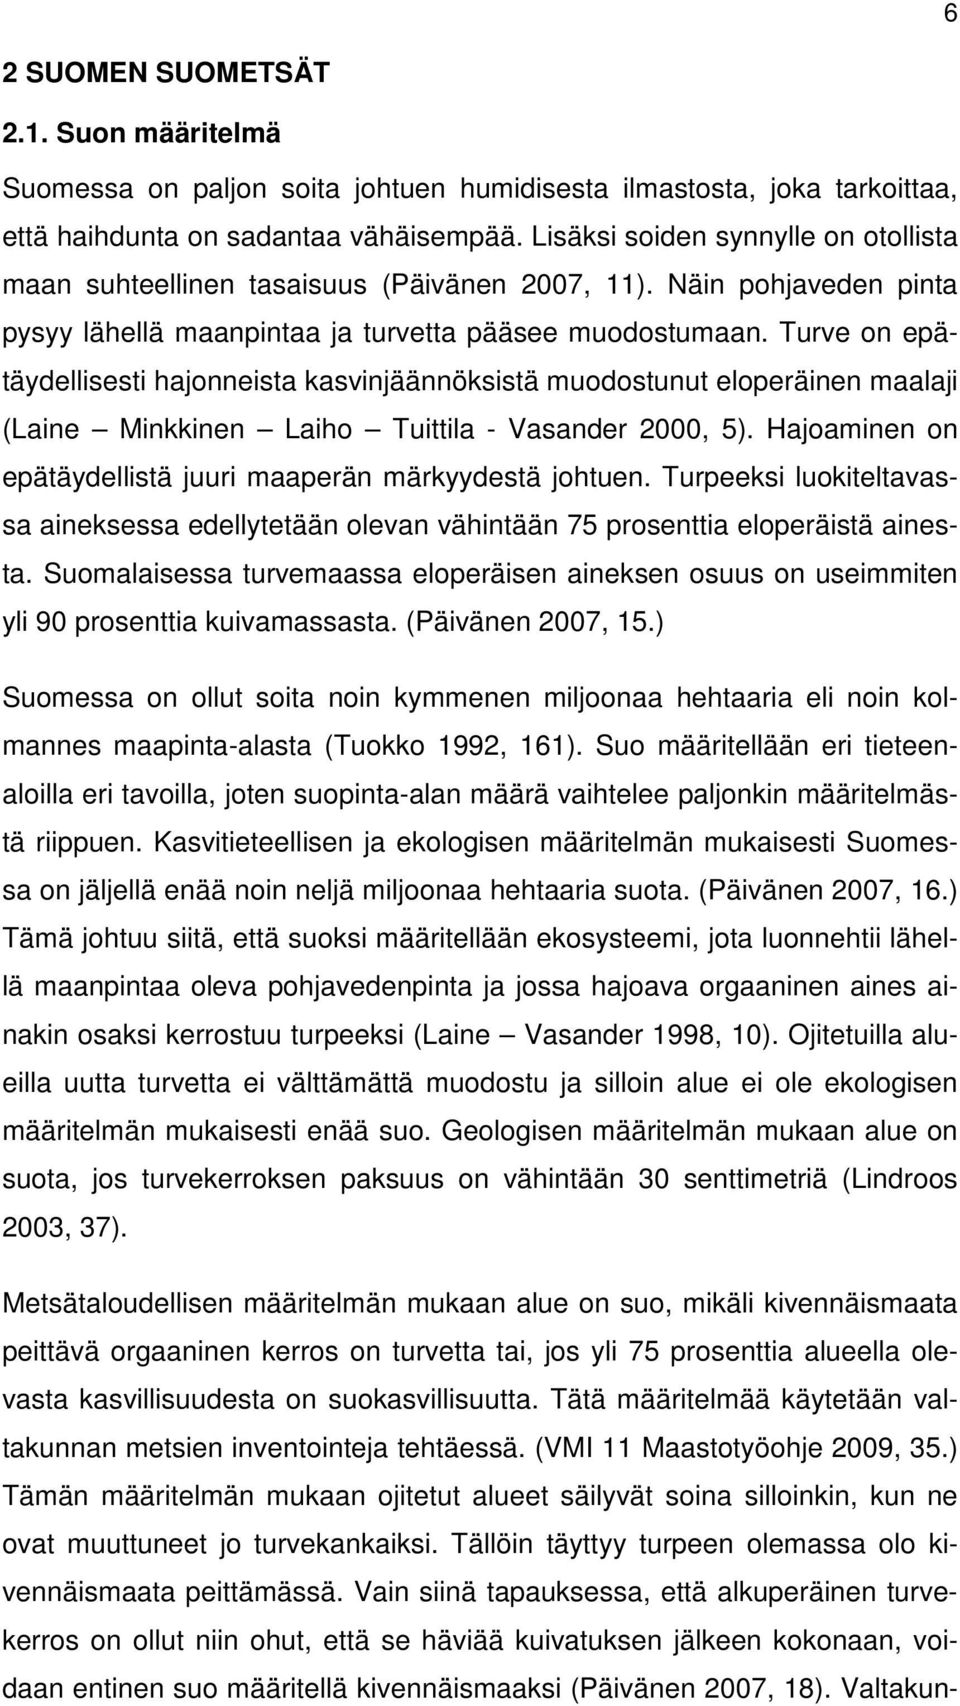 Turve on epätäydellisesti hajonneista kasvinjäännöksistä muodostunut eloperäinen maalaji (Laine Minkkinen Laiho Tuittila - Vasander 2000, 5).